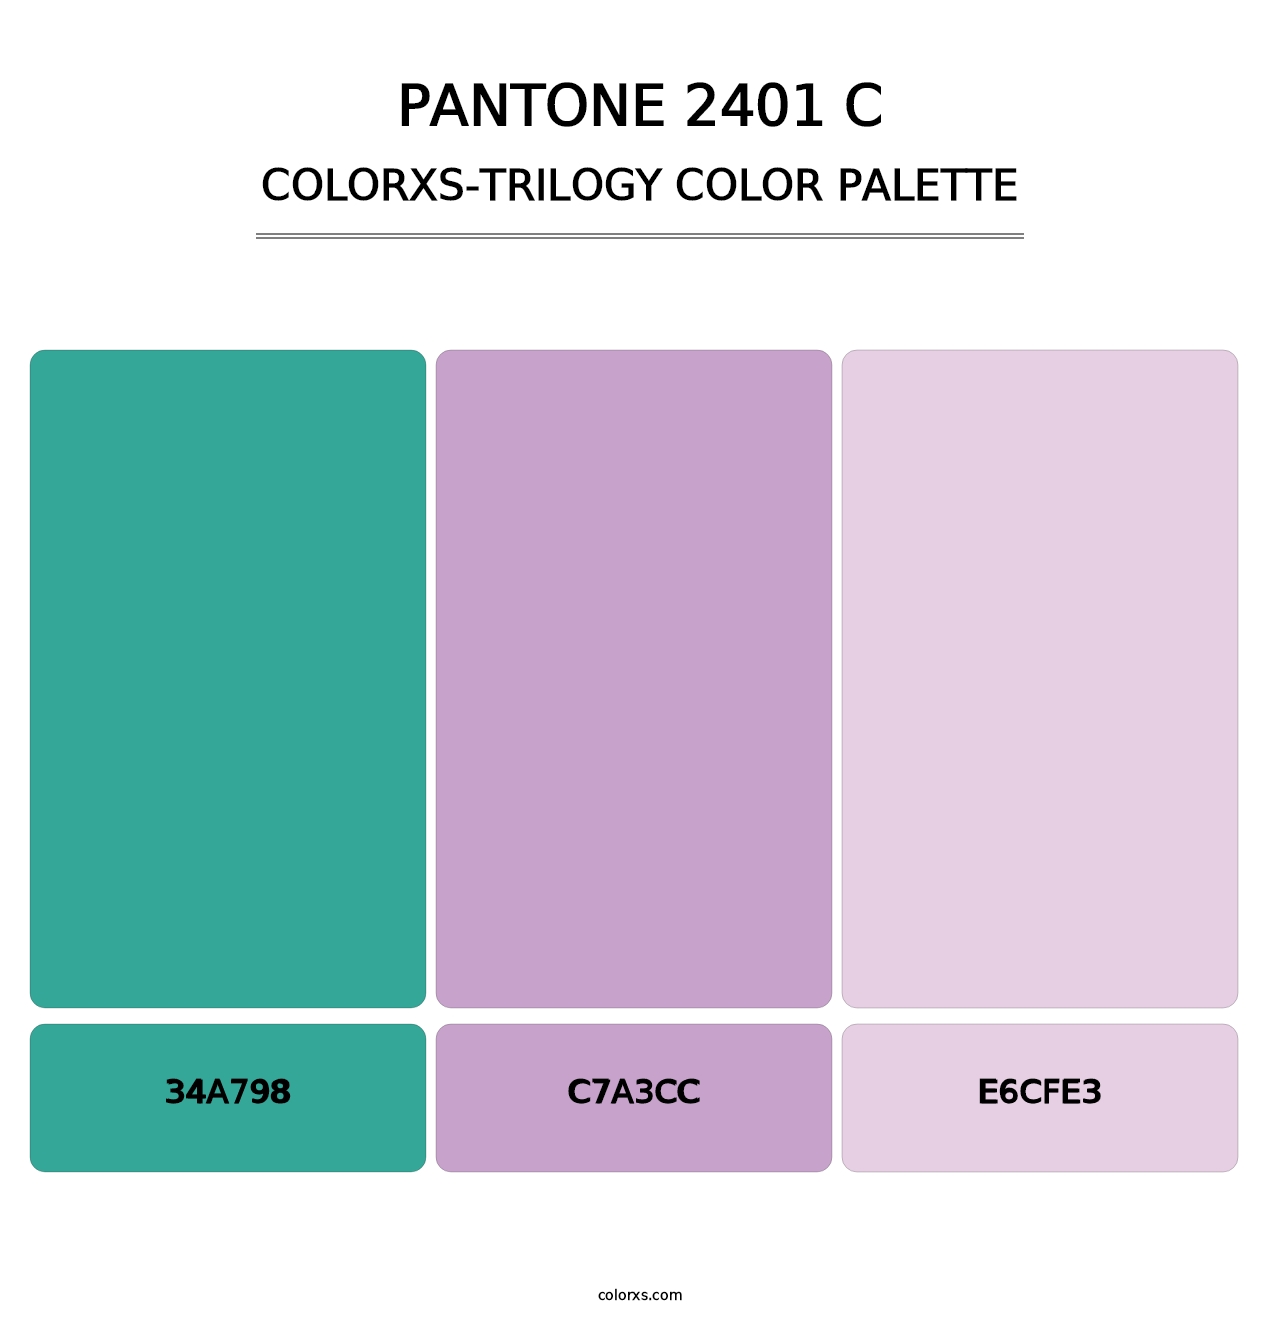 PANTONE 2401 C - Colorxs Trilogy Palette